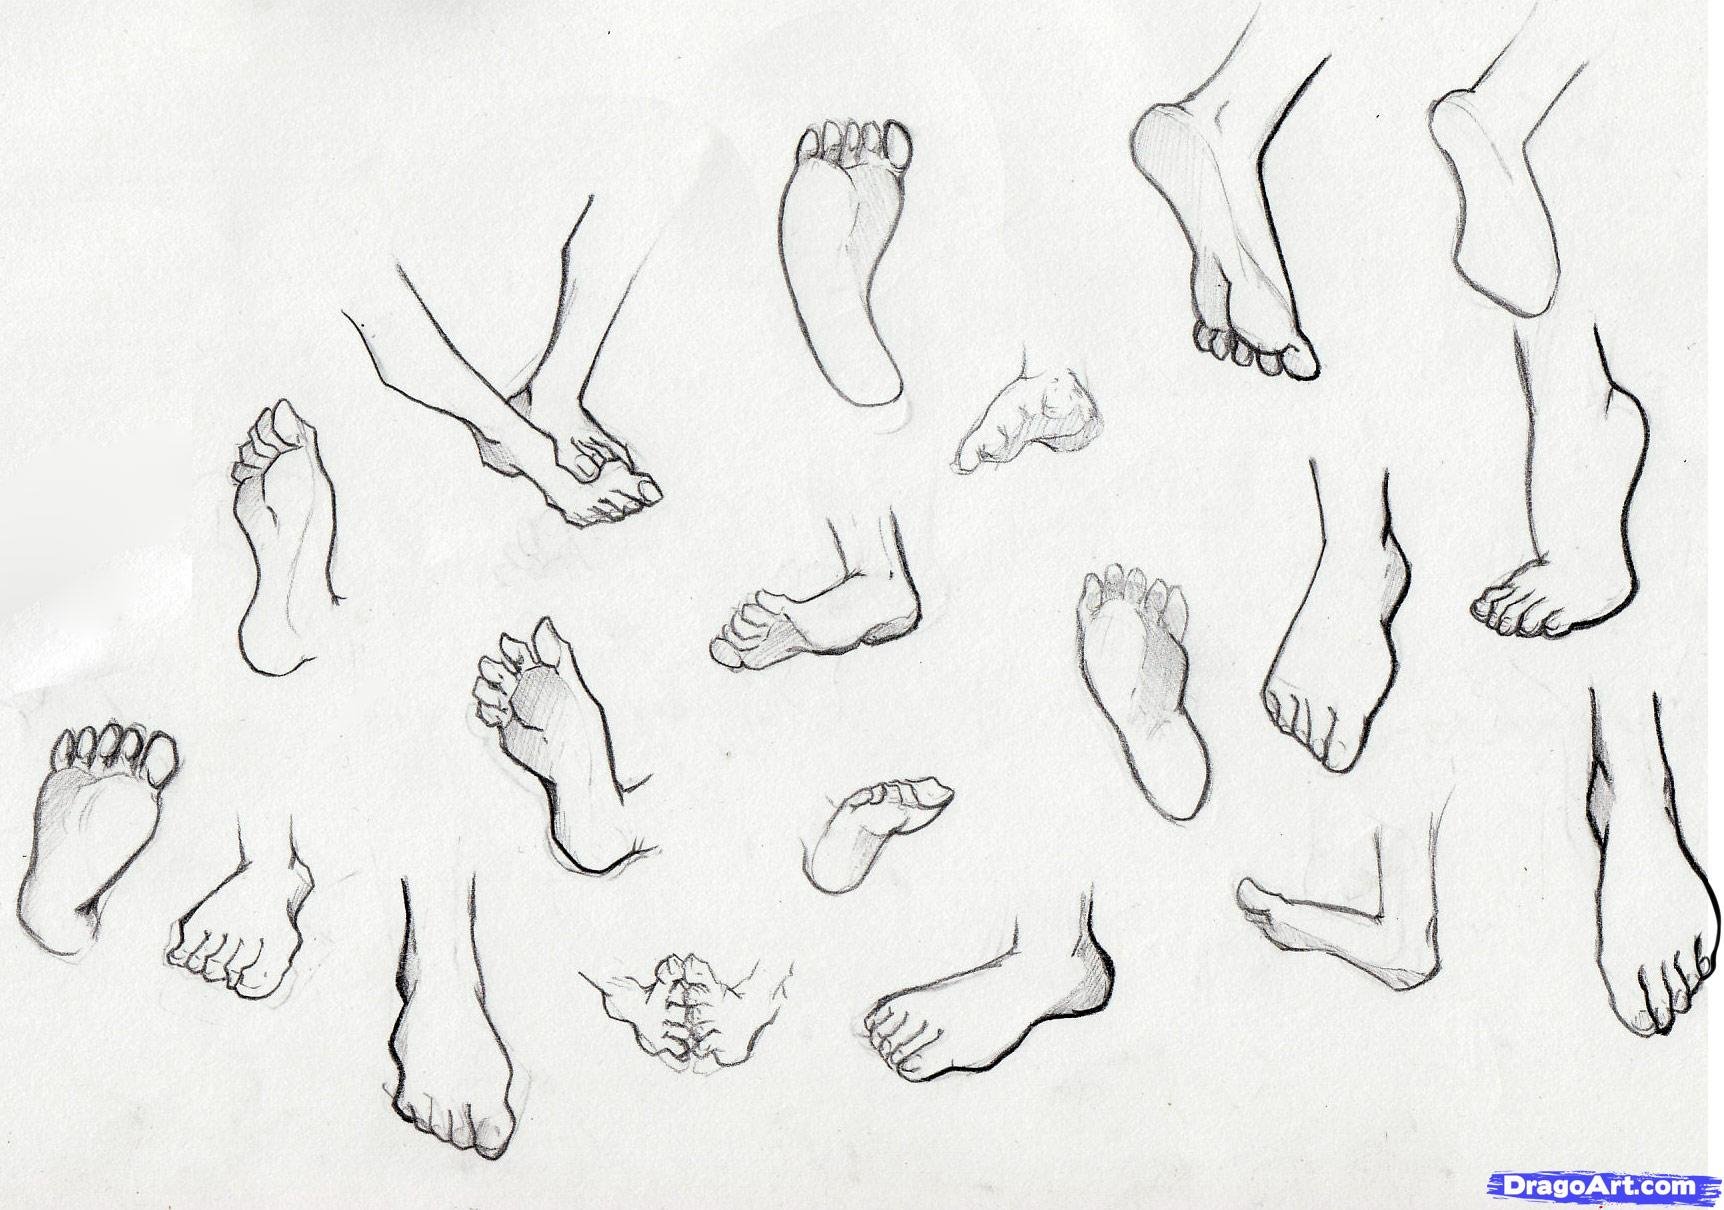 Foot search. Рисование ног. Ноги скетч. Стопы референсы.